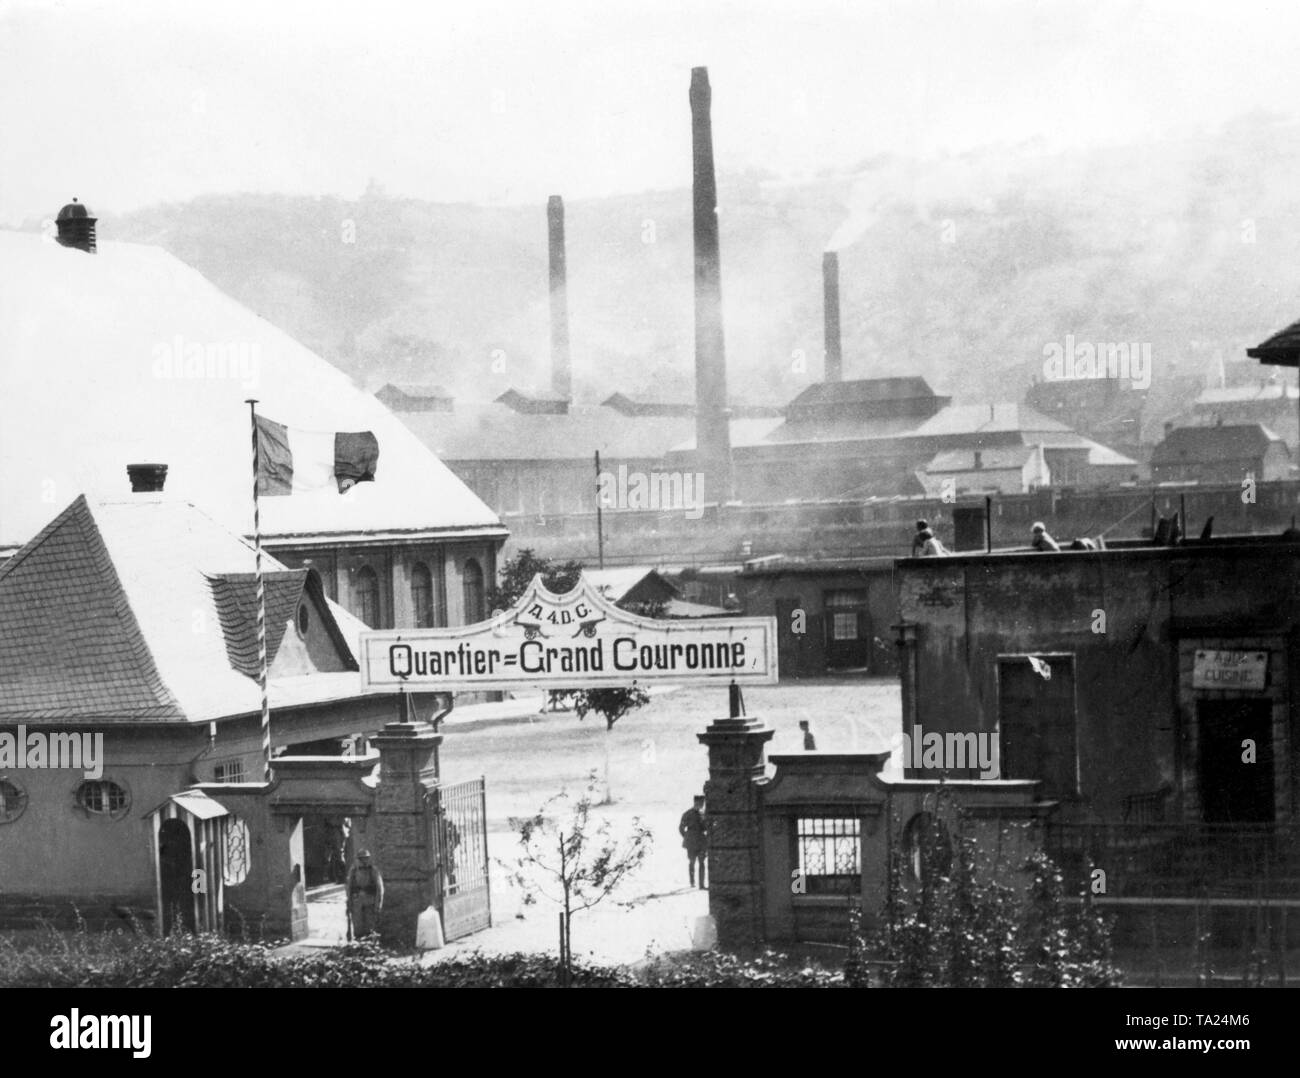 Quando i francesi hanno invaso la zona della Ruhr, occuparono molti edifici amministrativi dell'industria carboniera. Qui, il tricolore francese su una miniera di carbone. Foto Stock